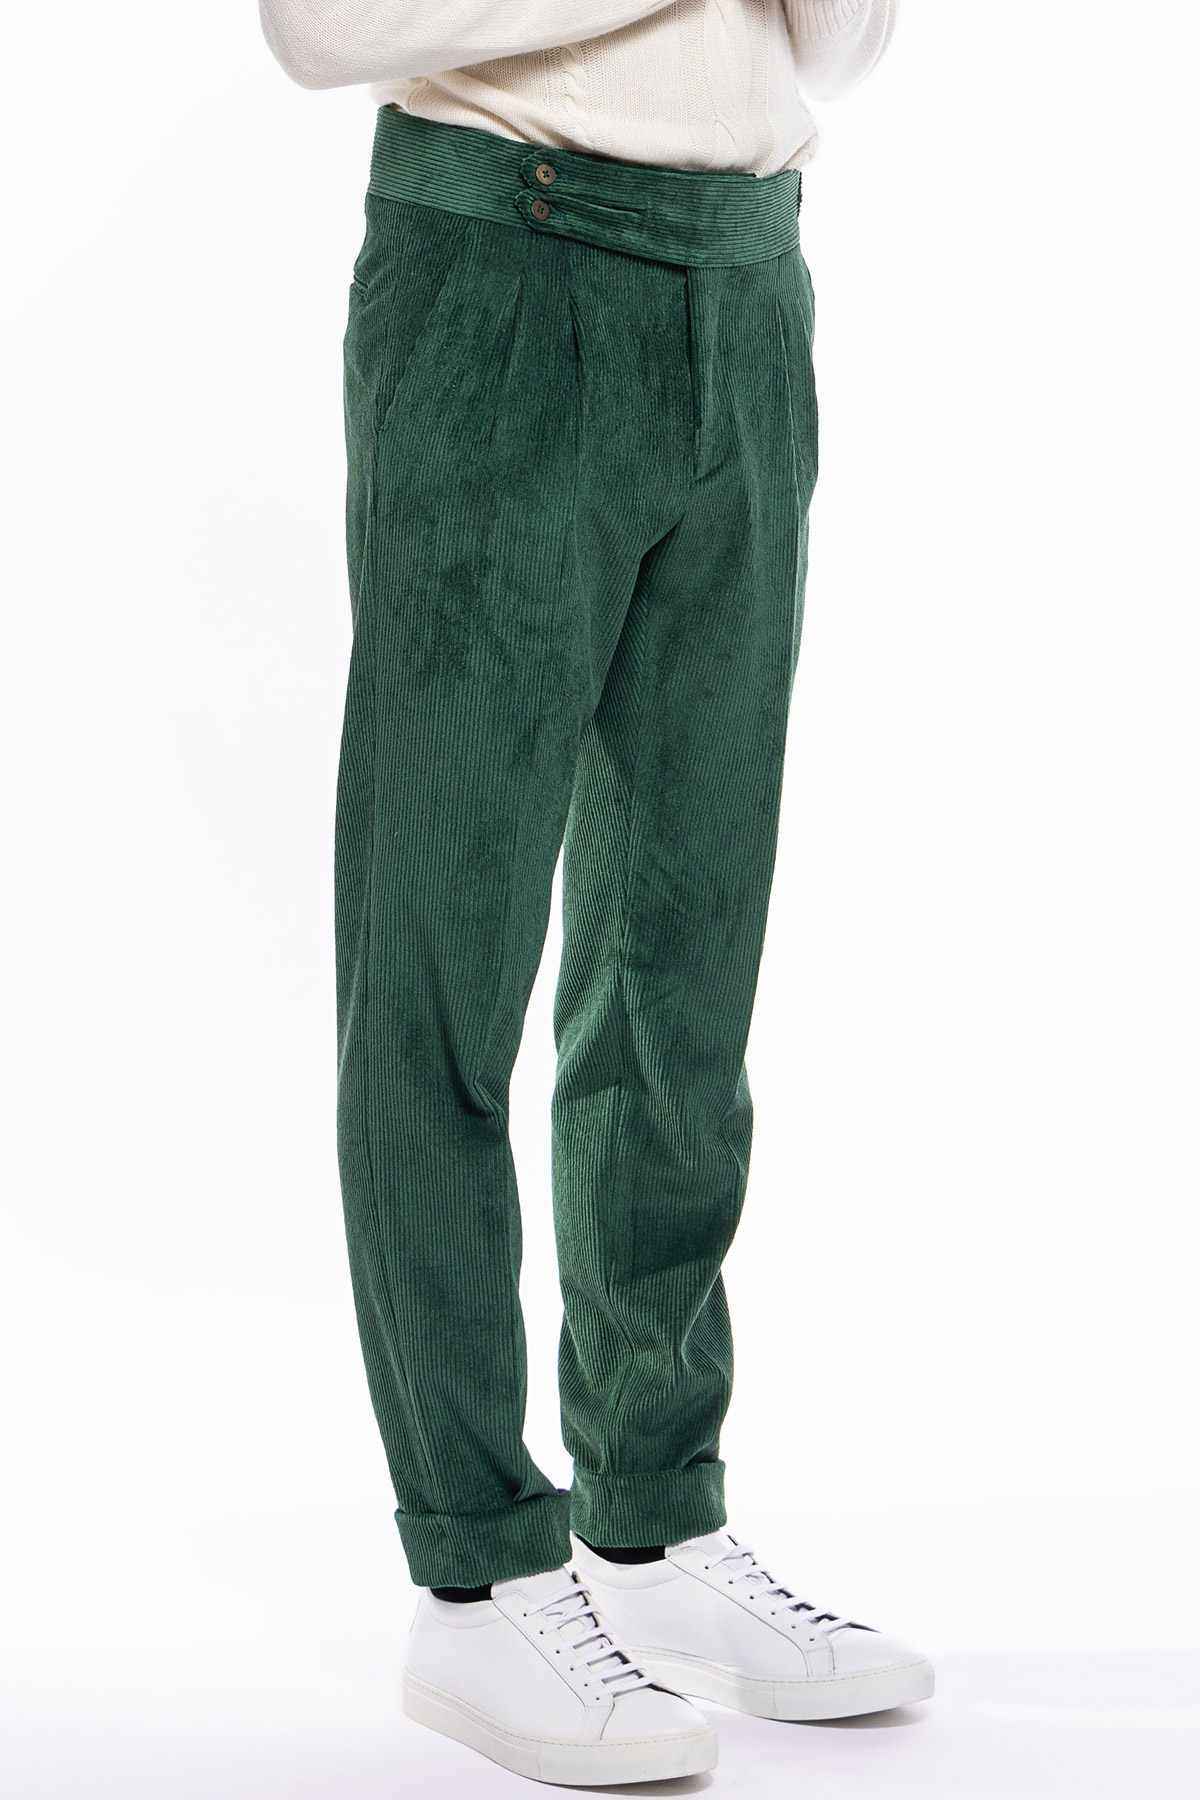 Pantalone uomo verde Bottiglia vita alta biforcato doppia pinces in velluto a costine strette